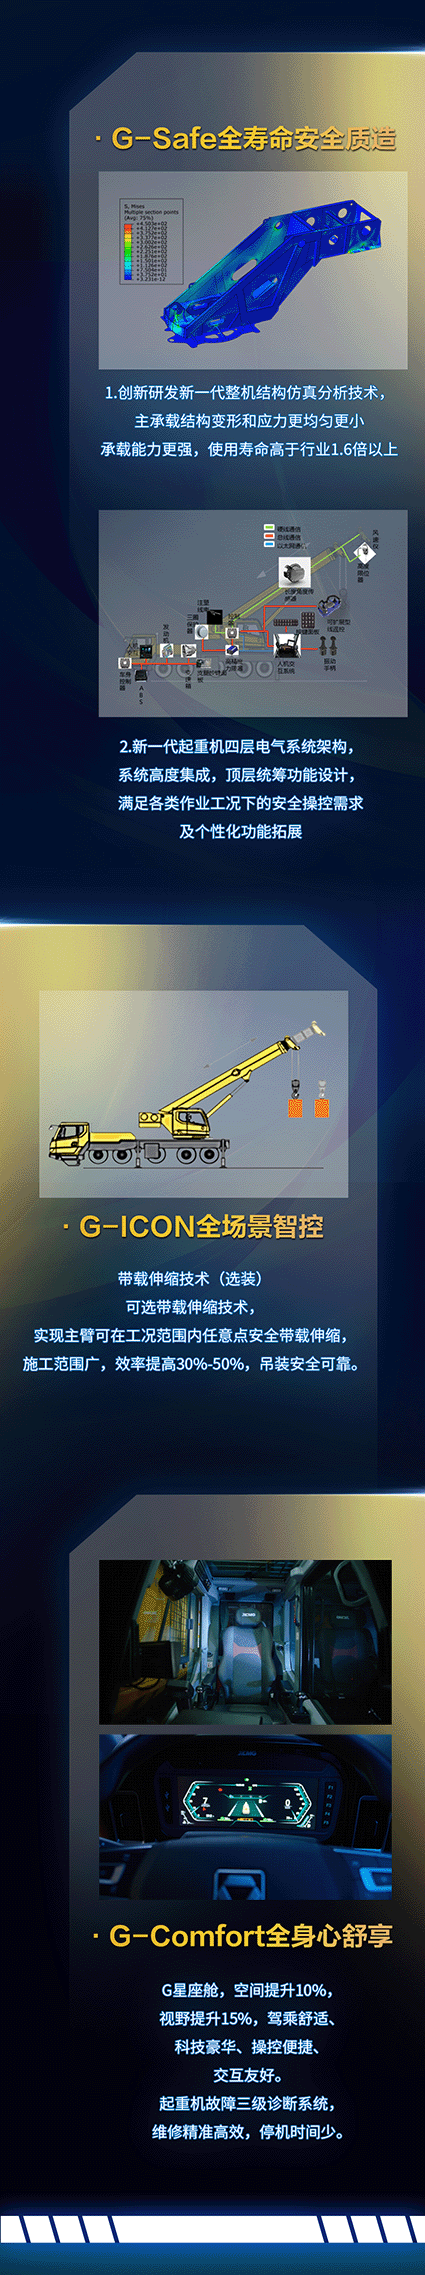 徐工G2代50吨明星产品——XCT50G5-1